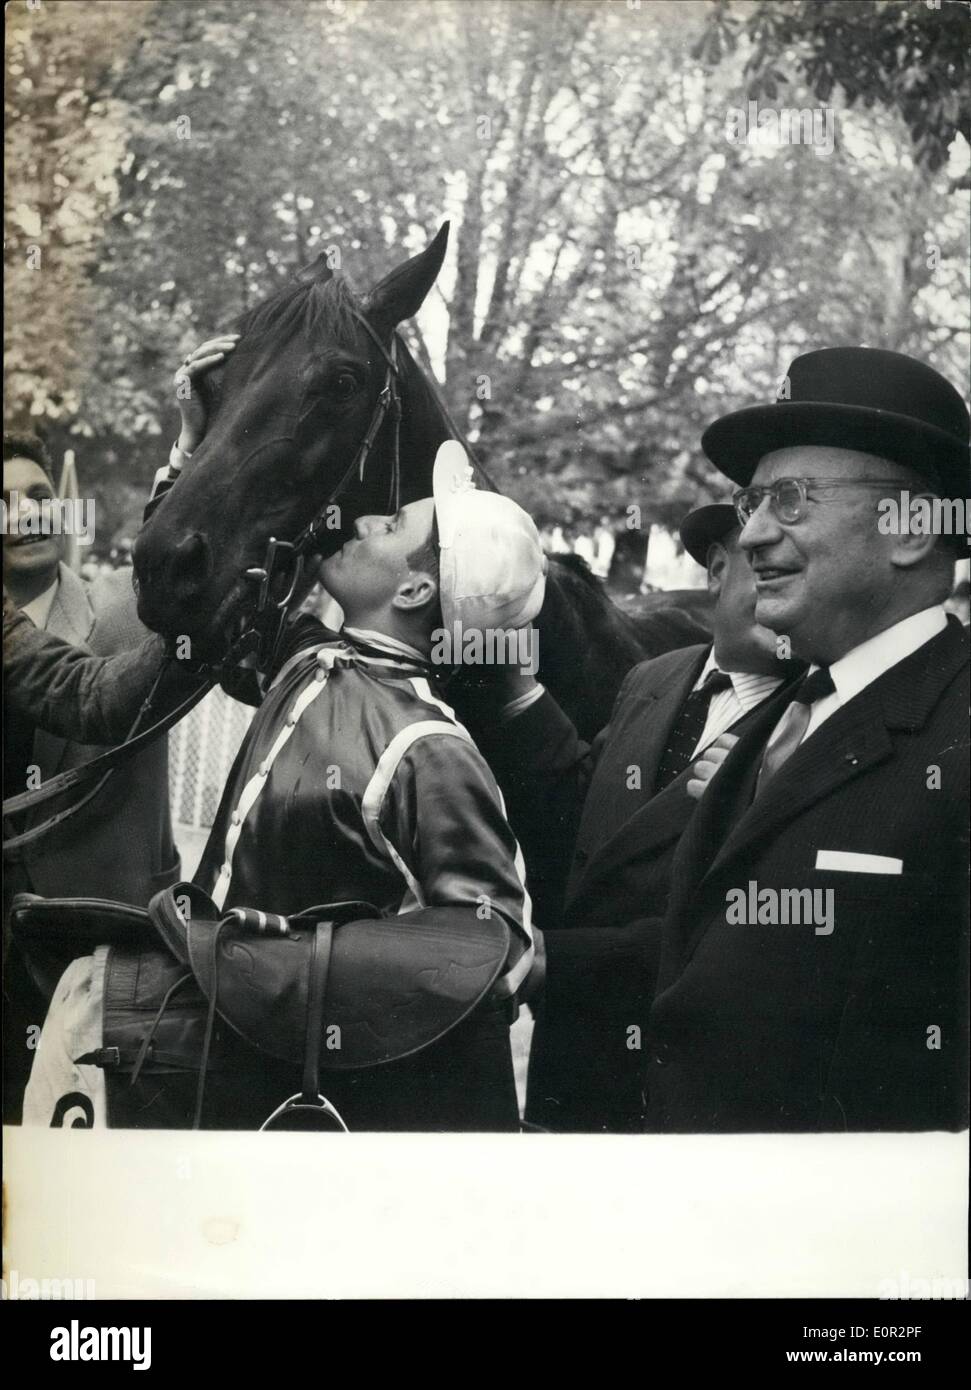 10. Oktober 1957 - außerhalb ins Arc De Trimphe Rennen: Oroso, ein Außenseiter, der Arc De Triophe gewann Rennen, das berühmte Ereignis gekoppelt mit der Verlosung. das Foto zeigt Serge Boollenger, der Jockey, sein Pferd zu küssen. Neben dem Pferd ist der Inhaber, M. Raoul Meyer. Stockfoto